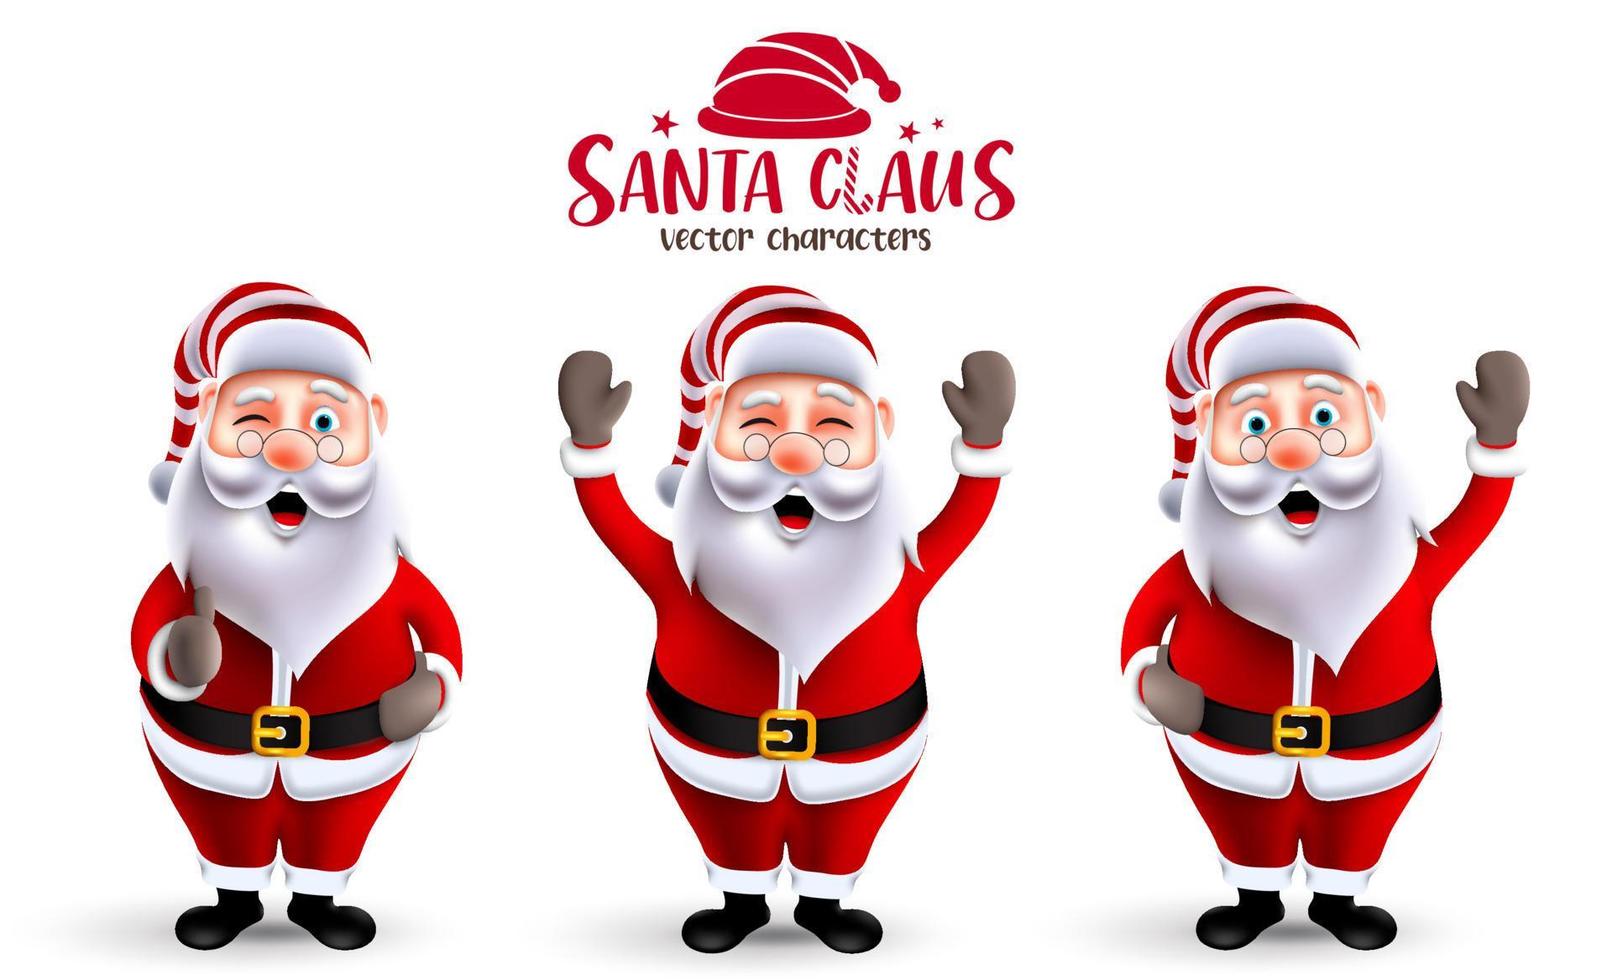 santa claus kerst vector tekenset. 3D-personages van de kerstman in vrolijke gezichtsuitdrukkingen met staande, zwaaiende en oke gebaren voor de kerstseizoencollectie. vectorillustratie.